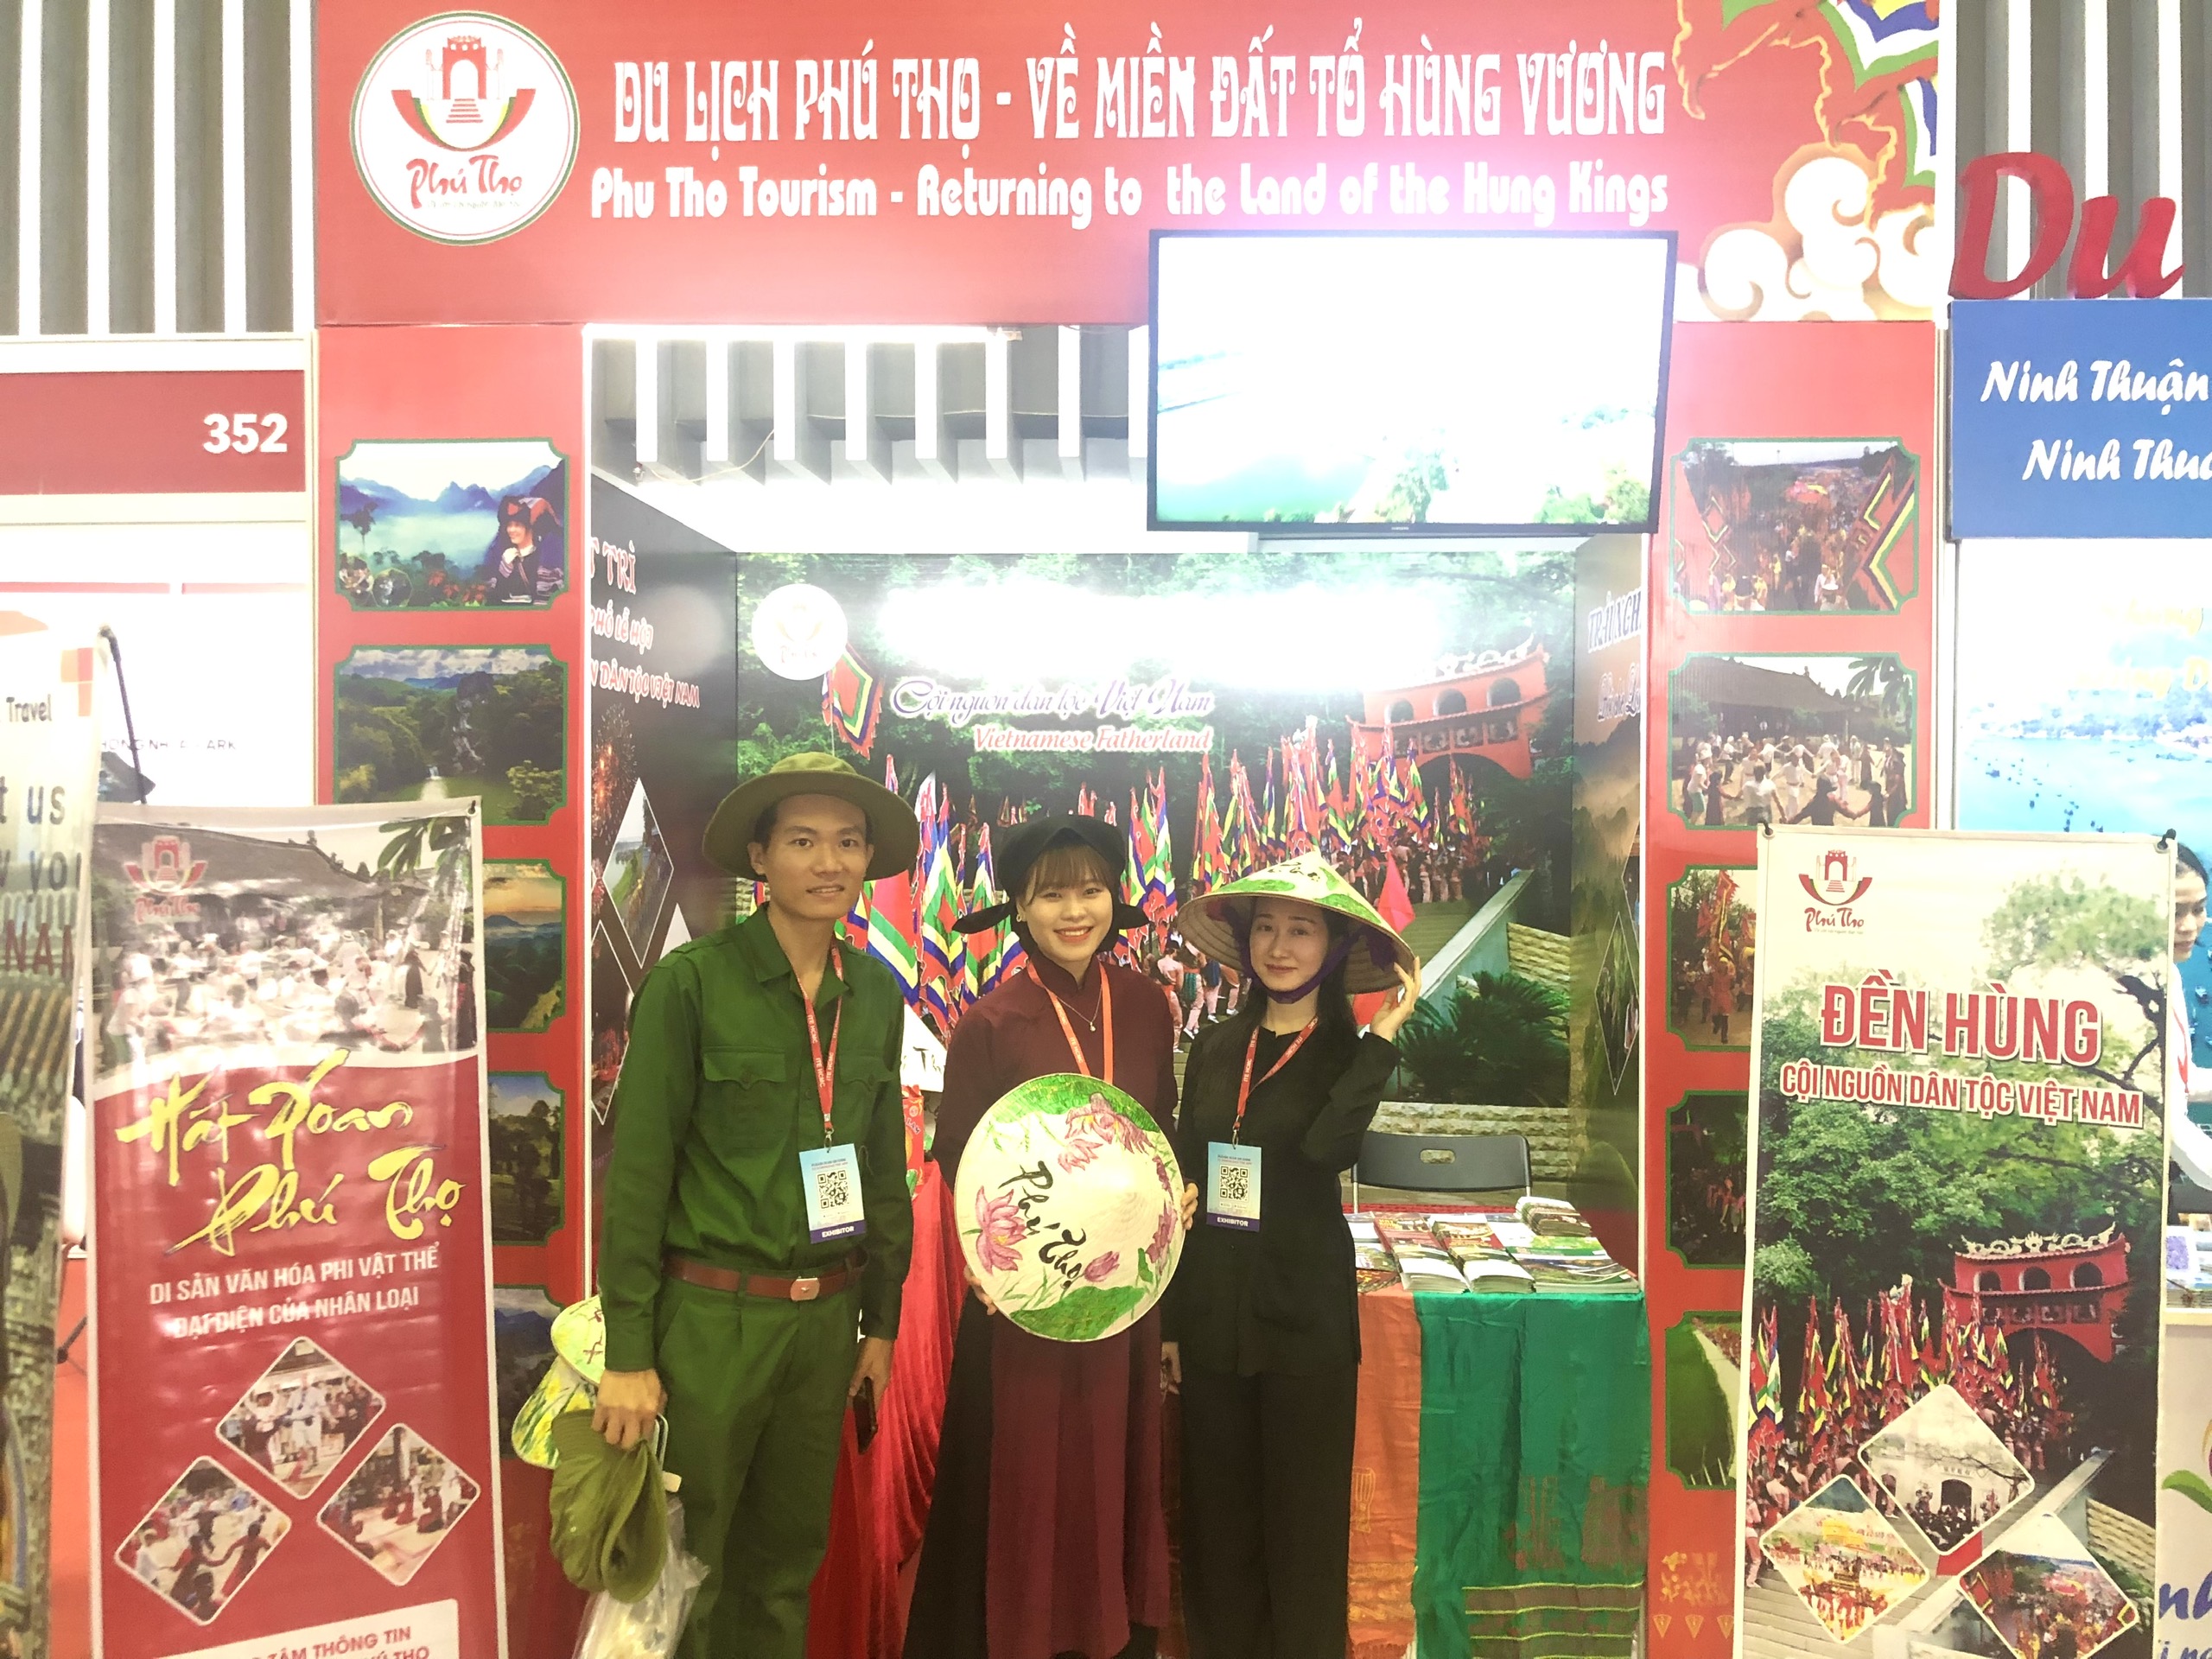 Phú Thọ tham gia quảng bá du lịch tại Hội chợ du lịch quốc tế thành phố Hồ Chí Minh lần thứ 17 năm 2023.